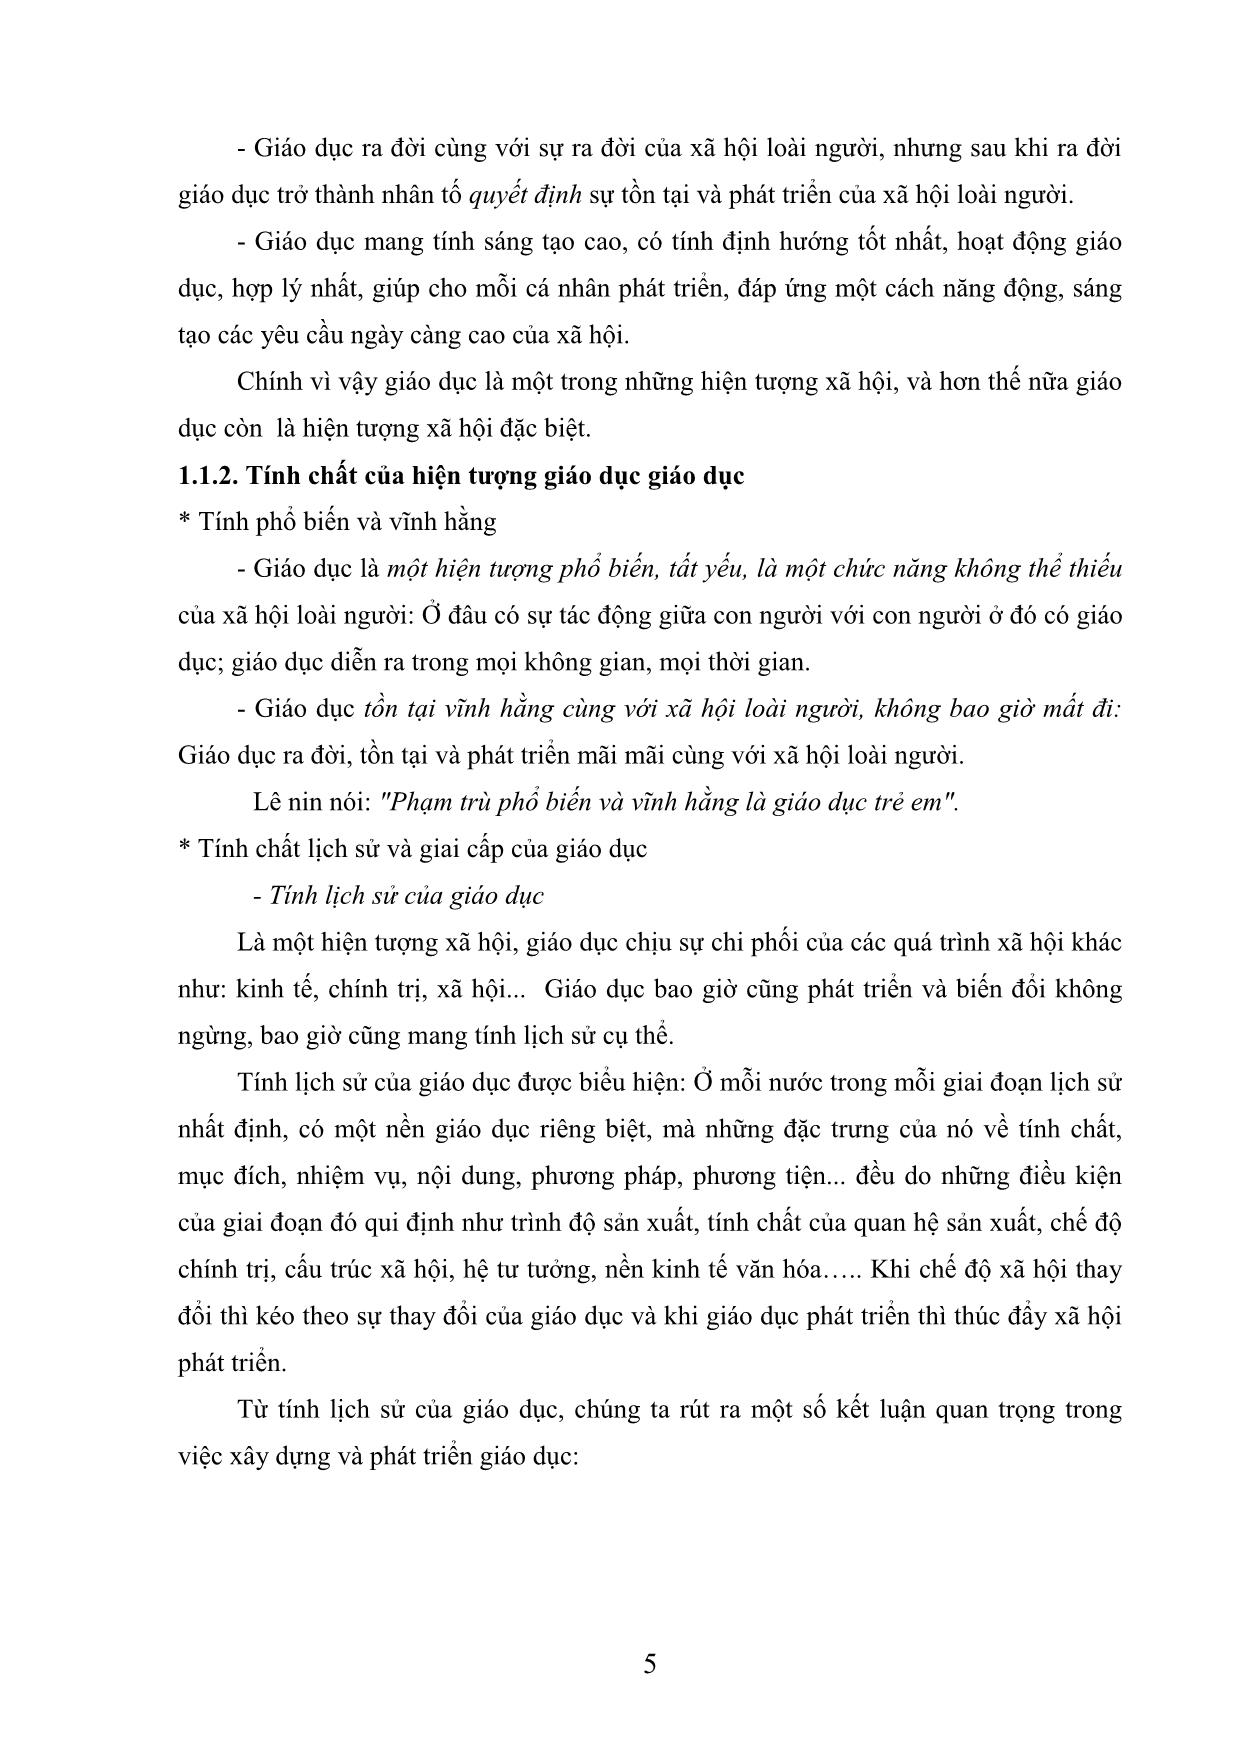 Giáo trình Giáo dục học đại cương - Lê Quang Đạt trang 5